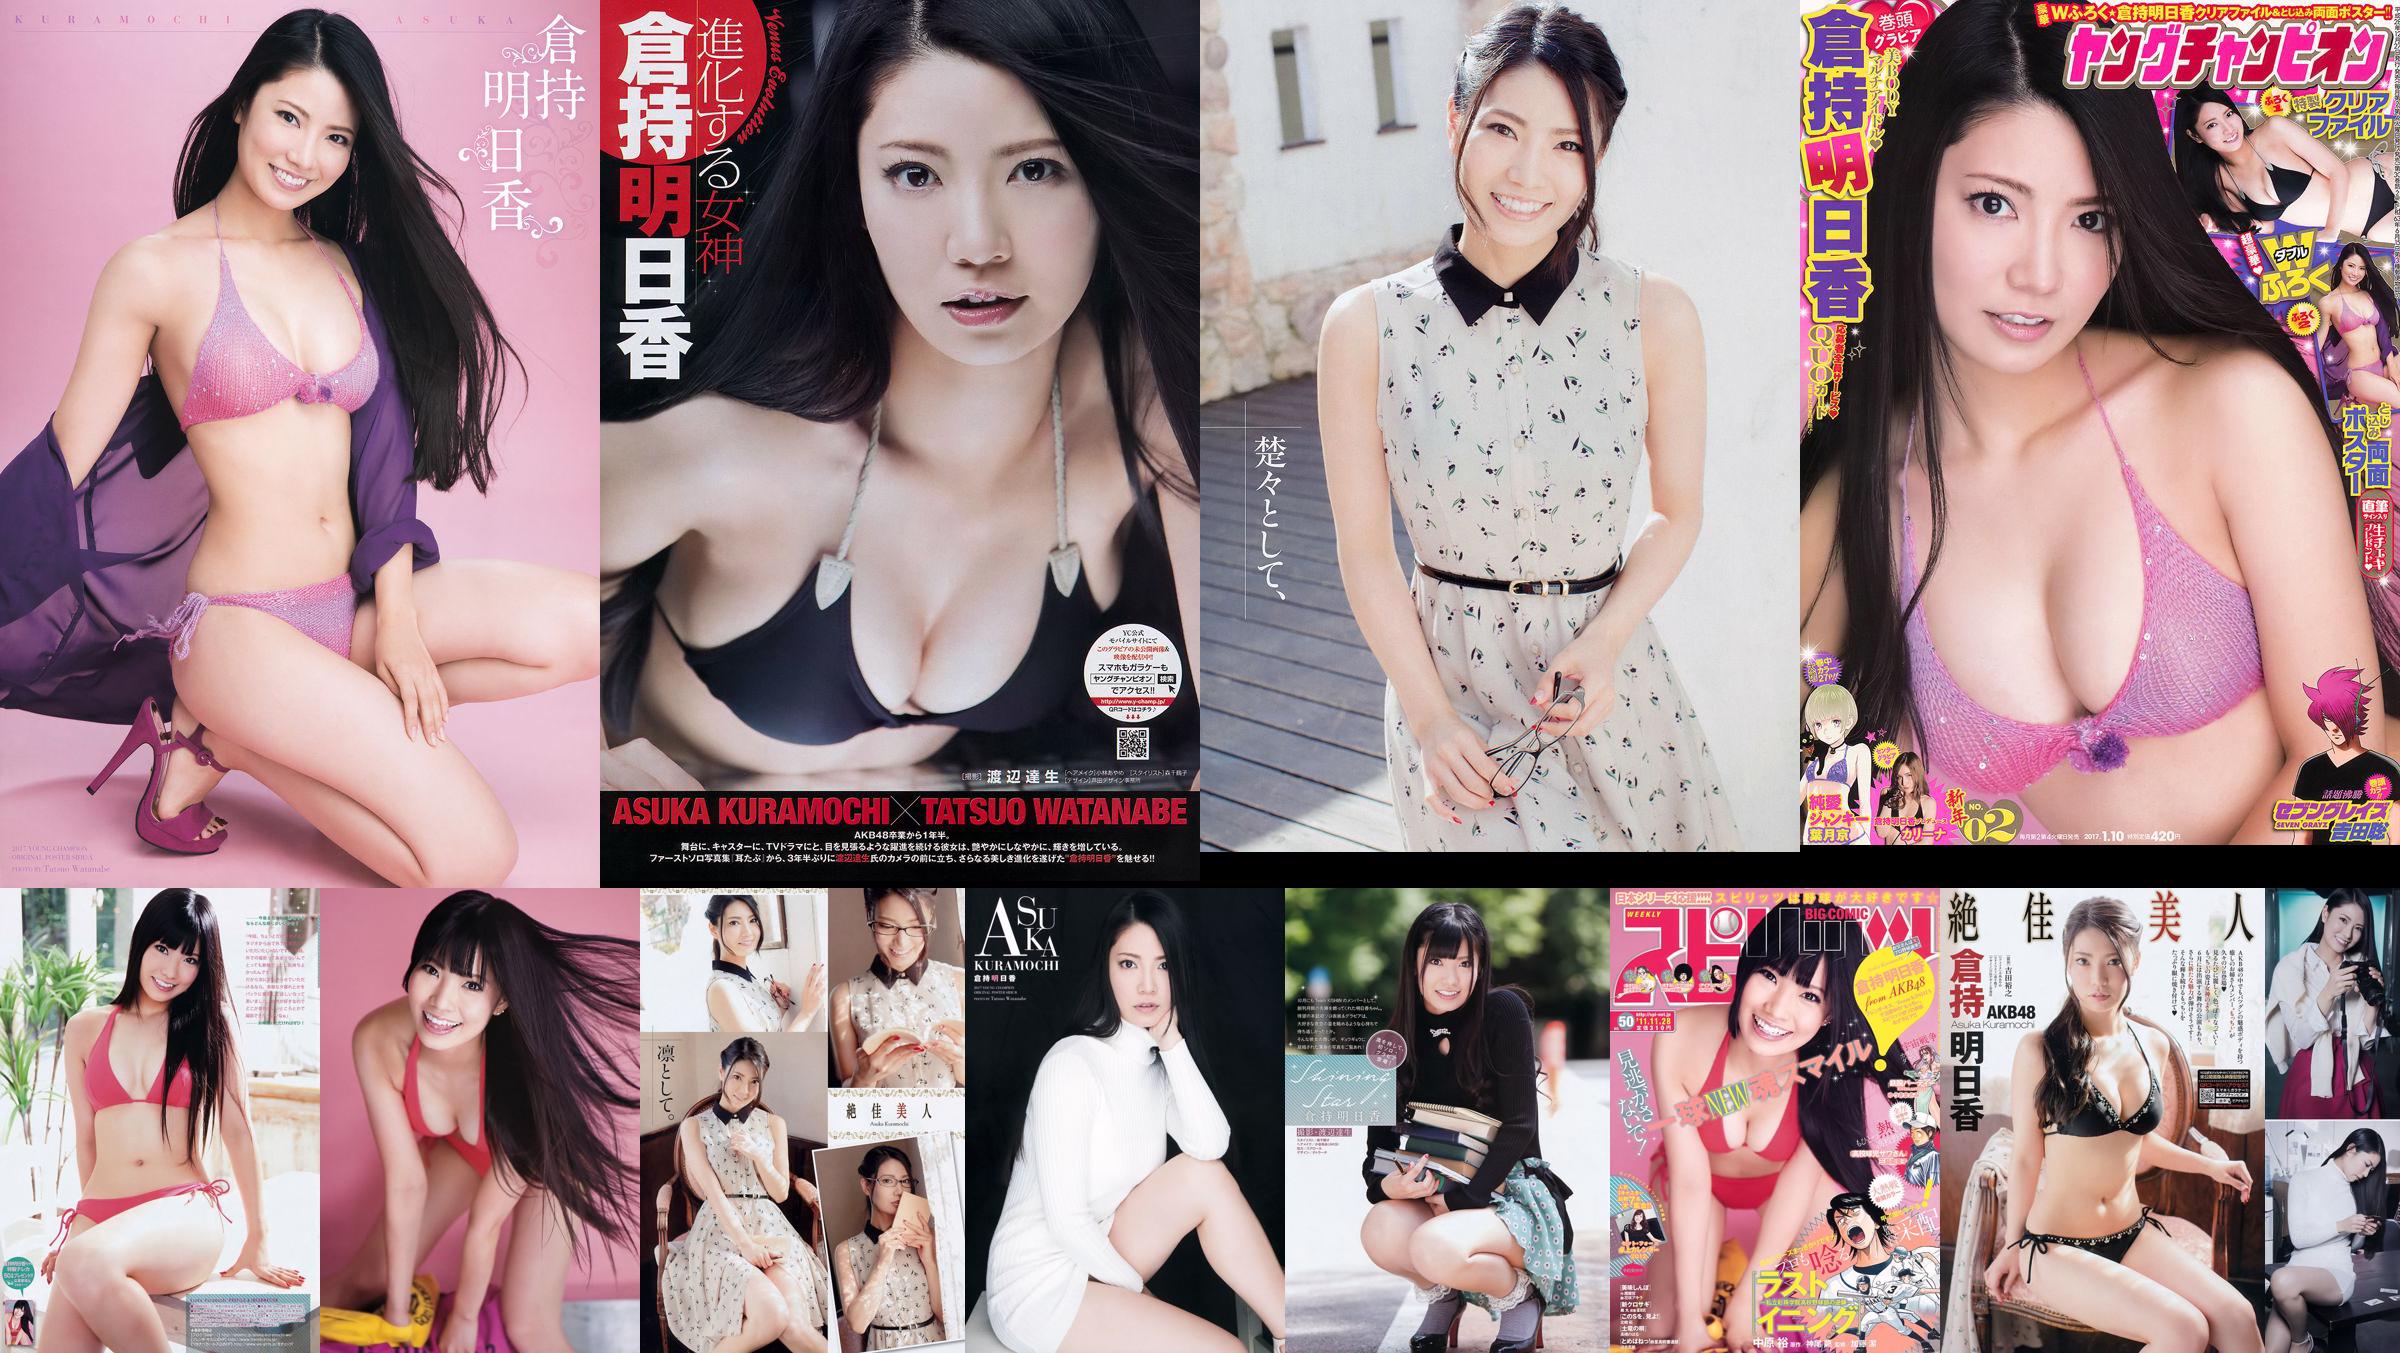 [Young Champion] Asuka Kuramochi 2015 No.09 Photo Magazine No.7f75d9 Page 2